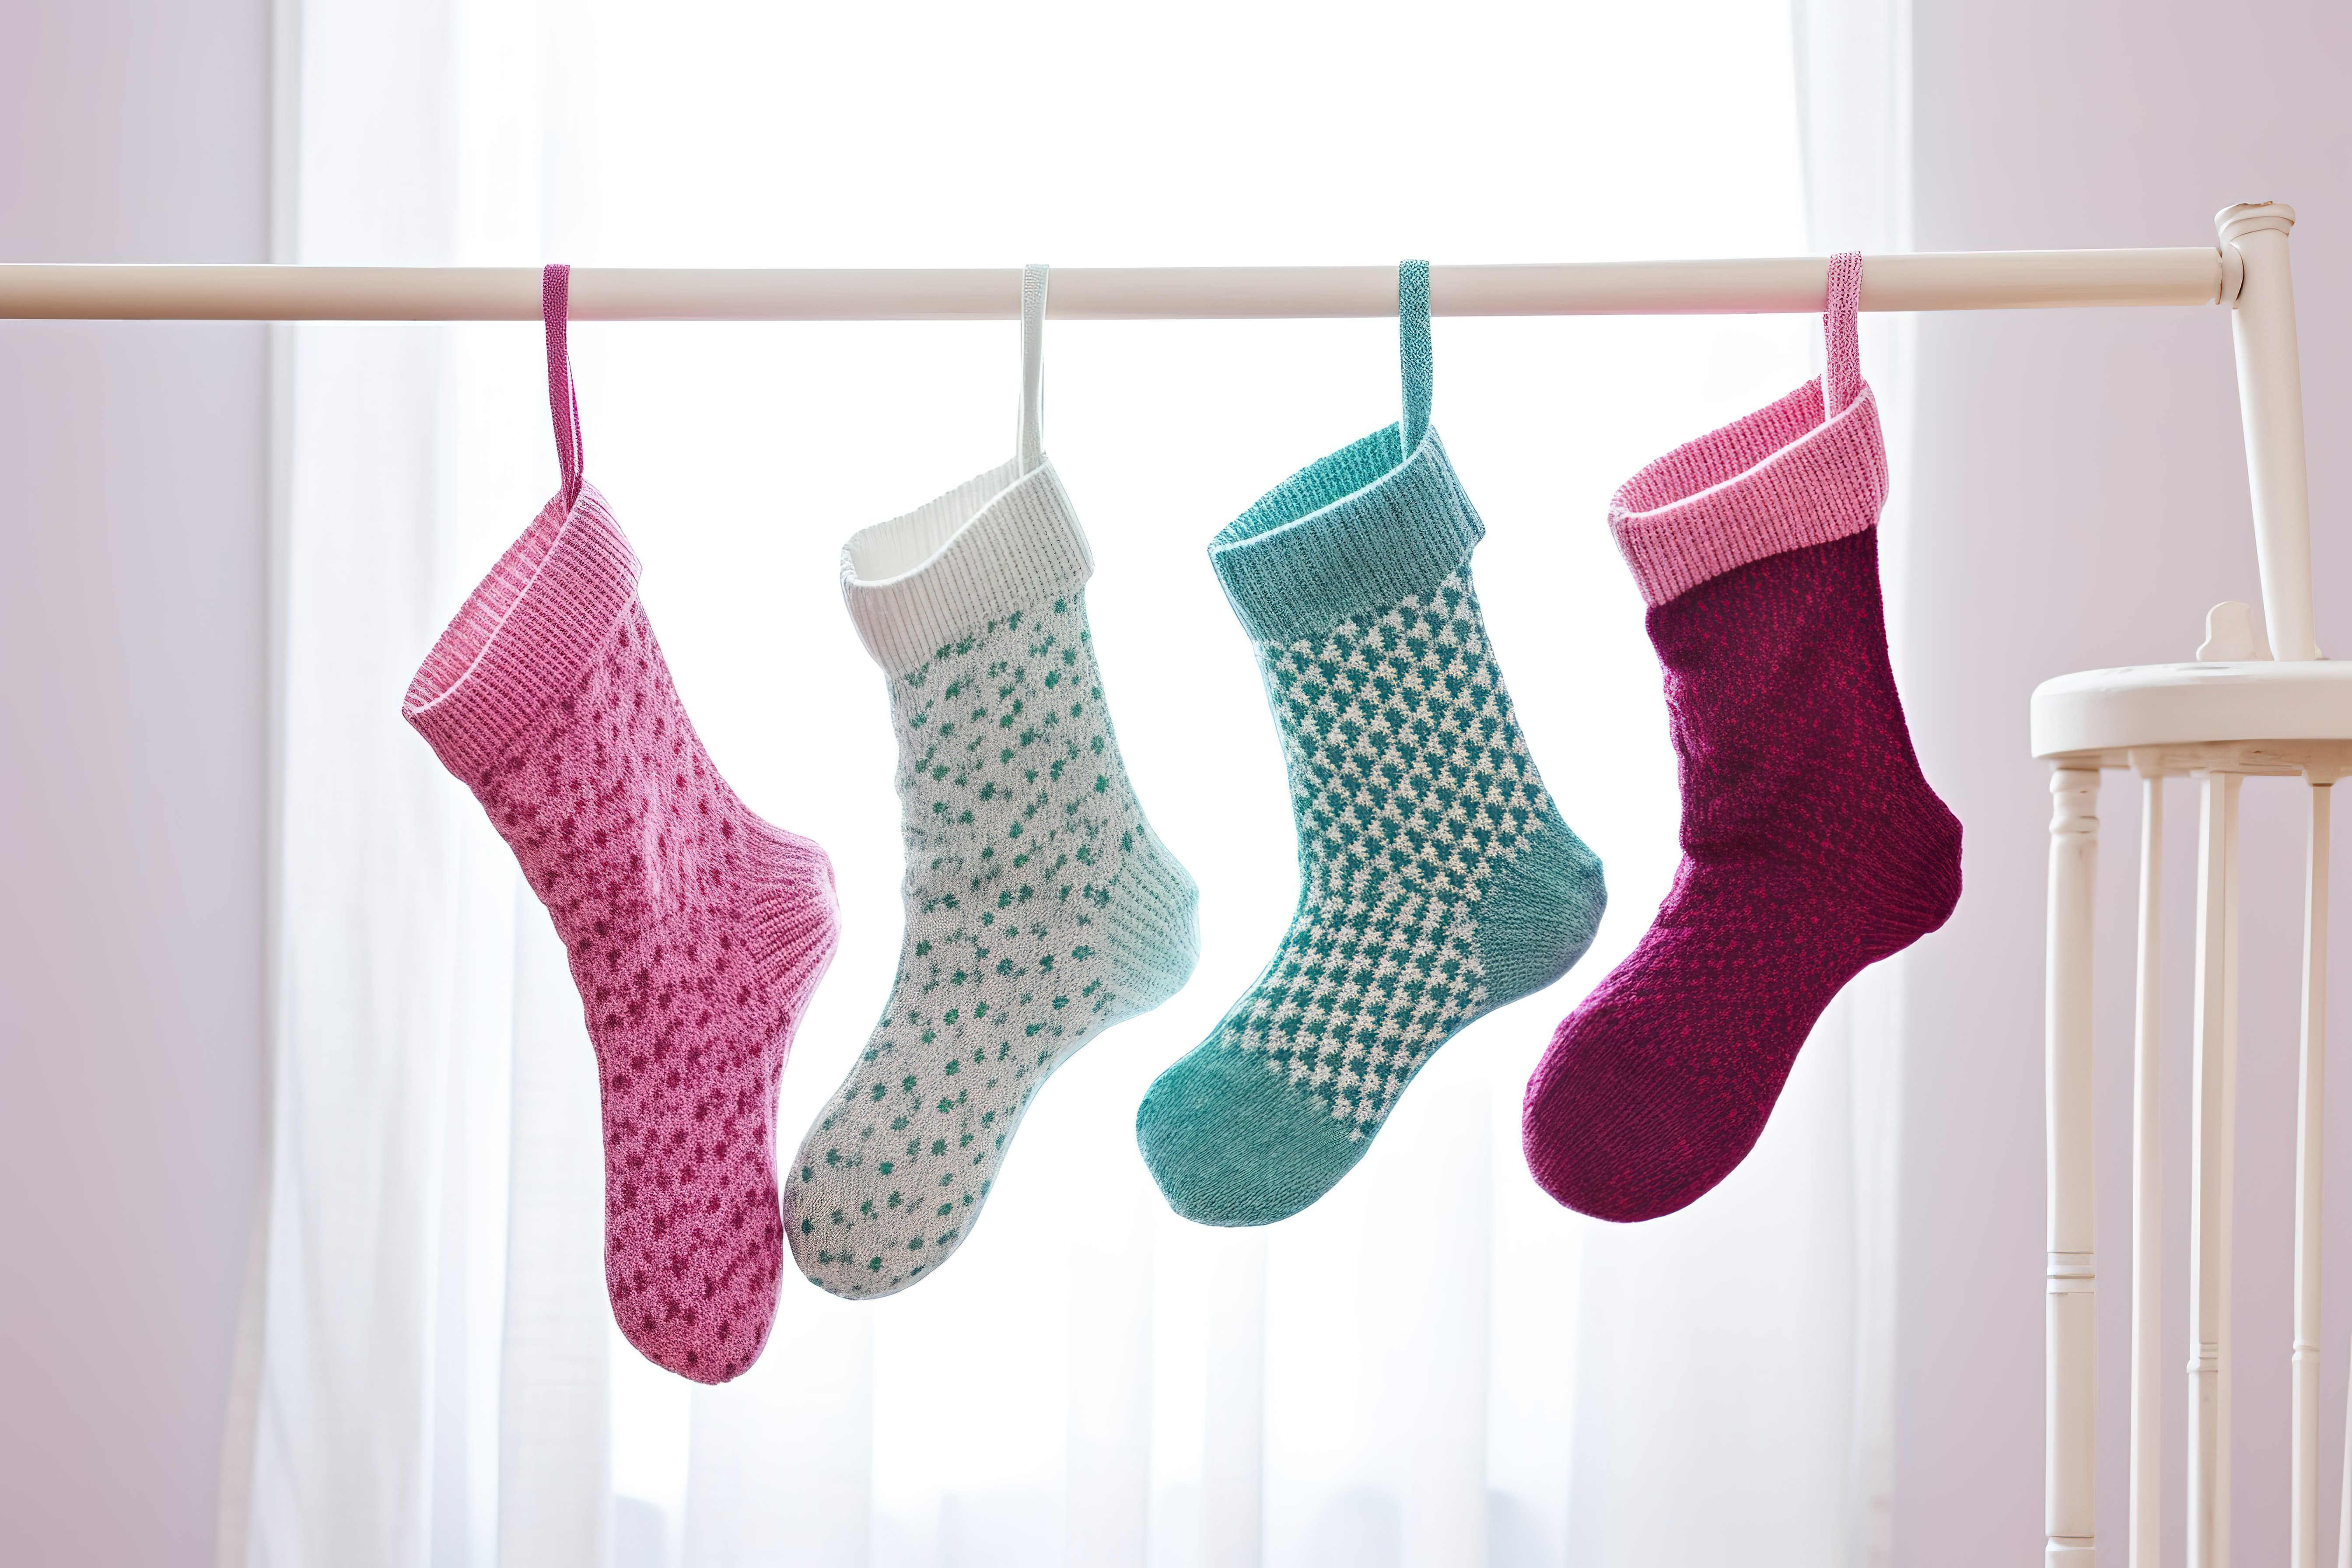 三种类型的袜子挂在白色床上方的线上图片